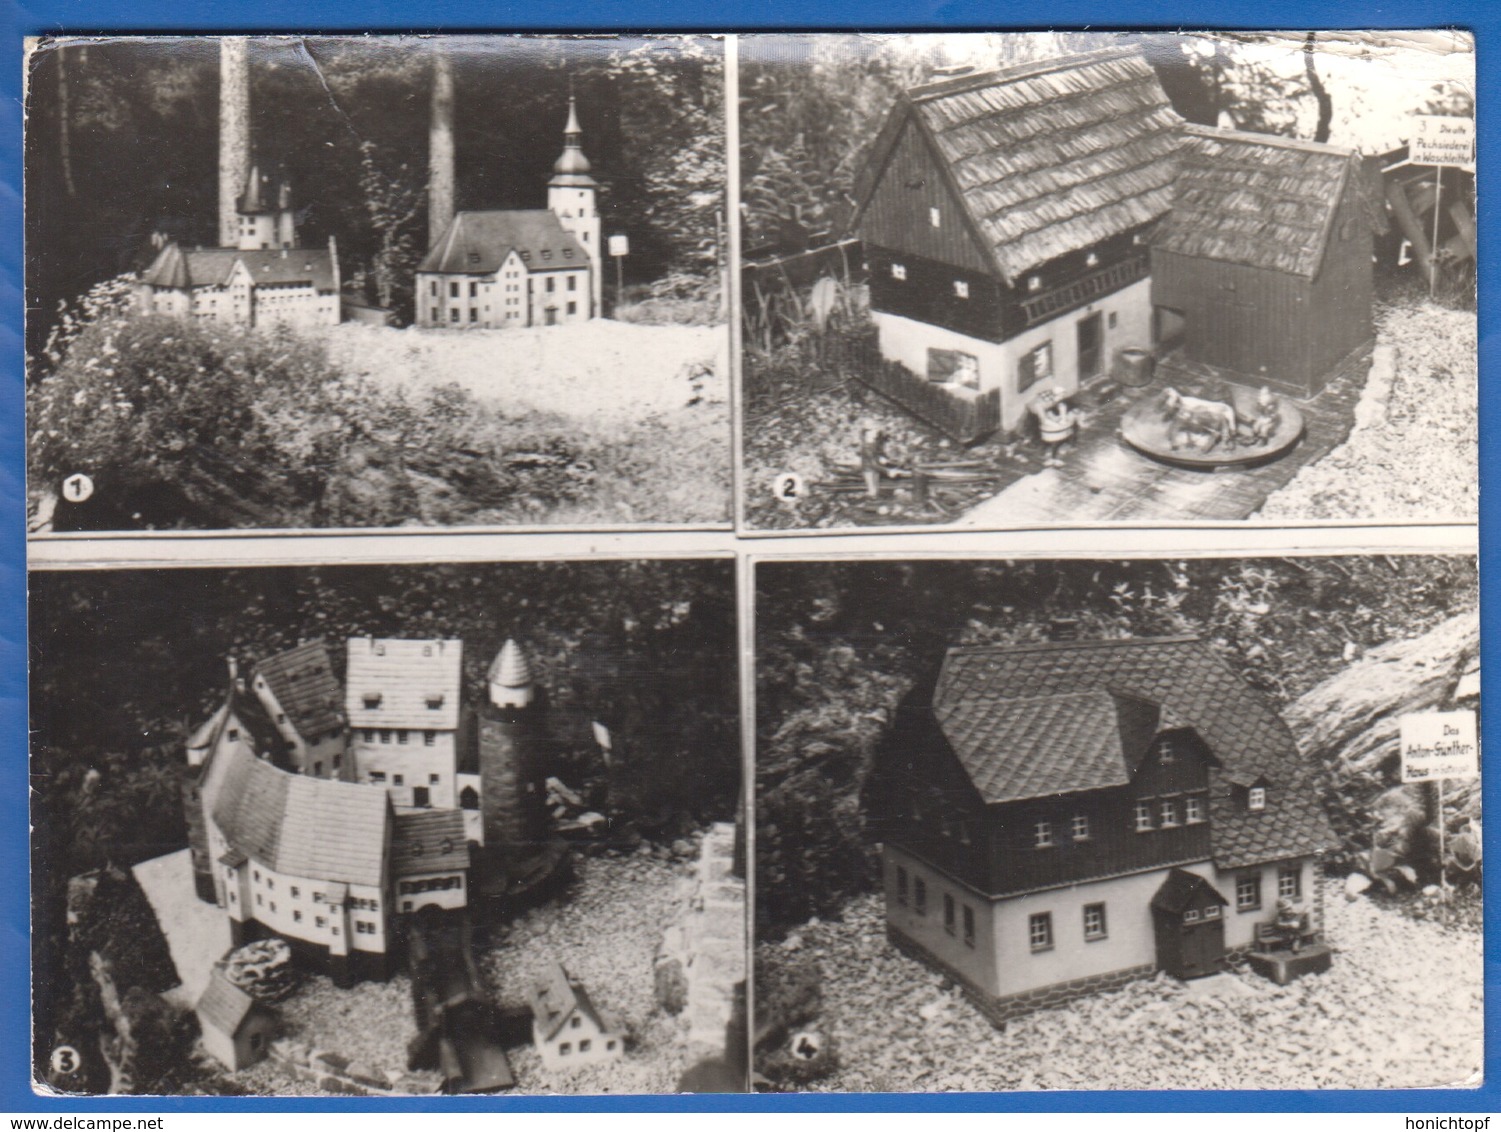 Deutschland; Waschleithe, Grünhain-Beierfeld; Multibildkarte - Gruenhain